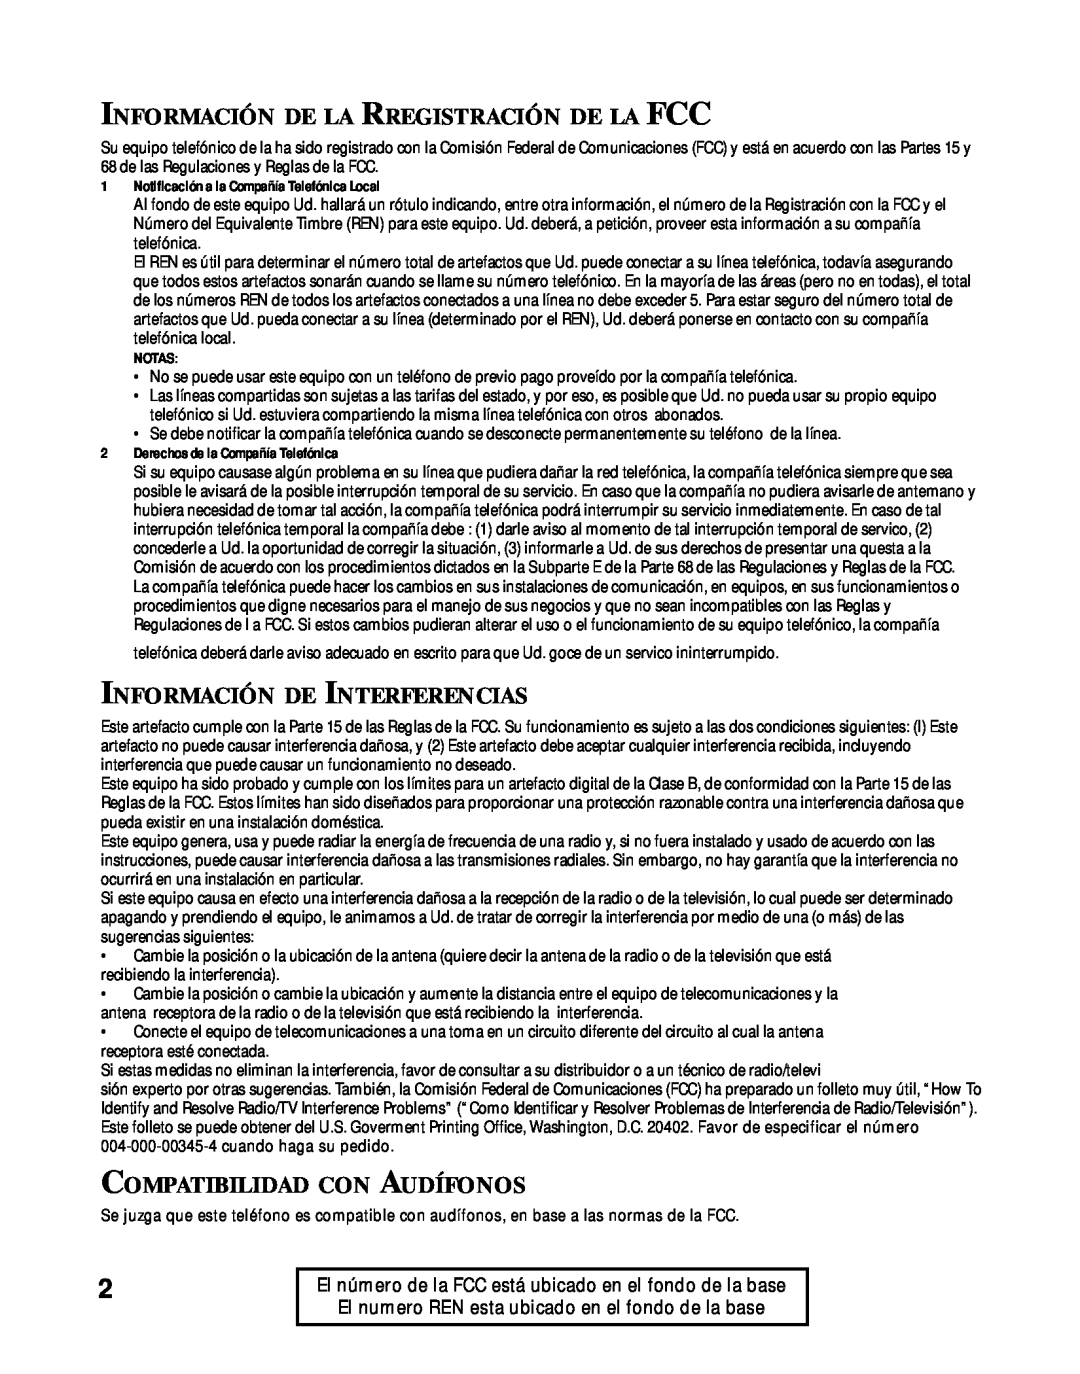 RCA 900 MHz manual Información De La Rregistración De La Fcc, Información De Interferencias, Compatibilidad Con Audífonos 